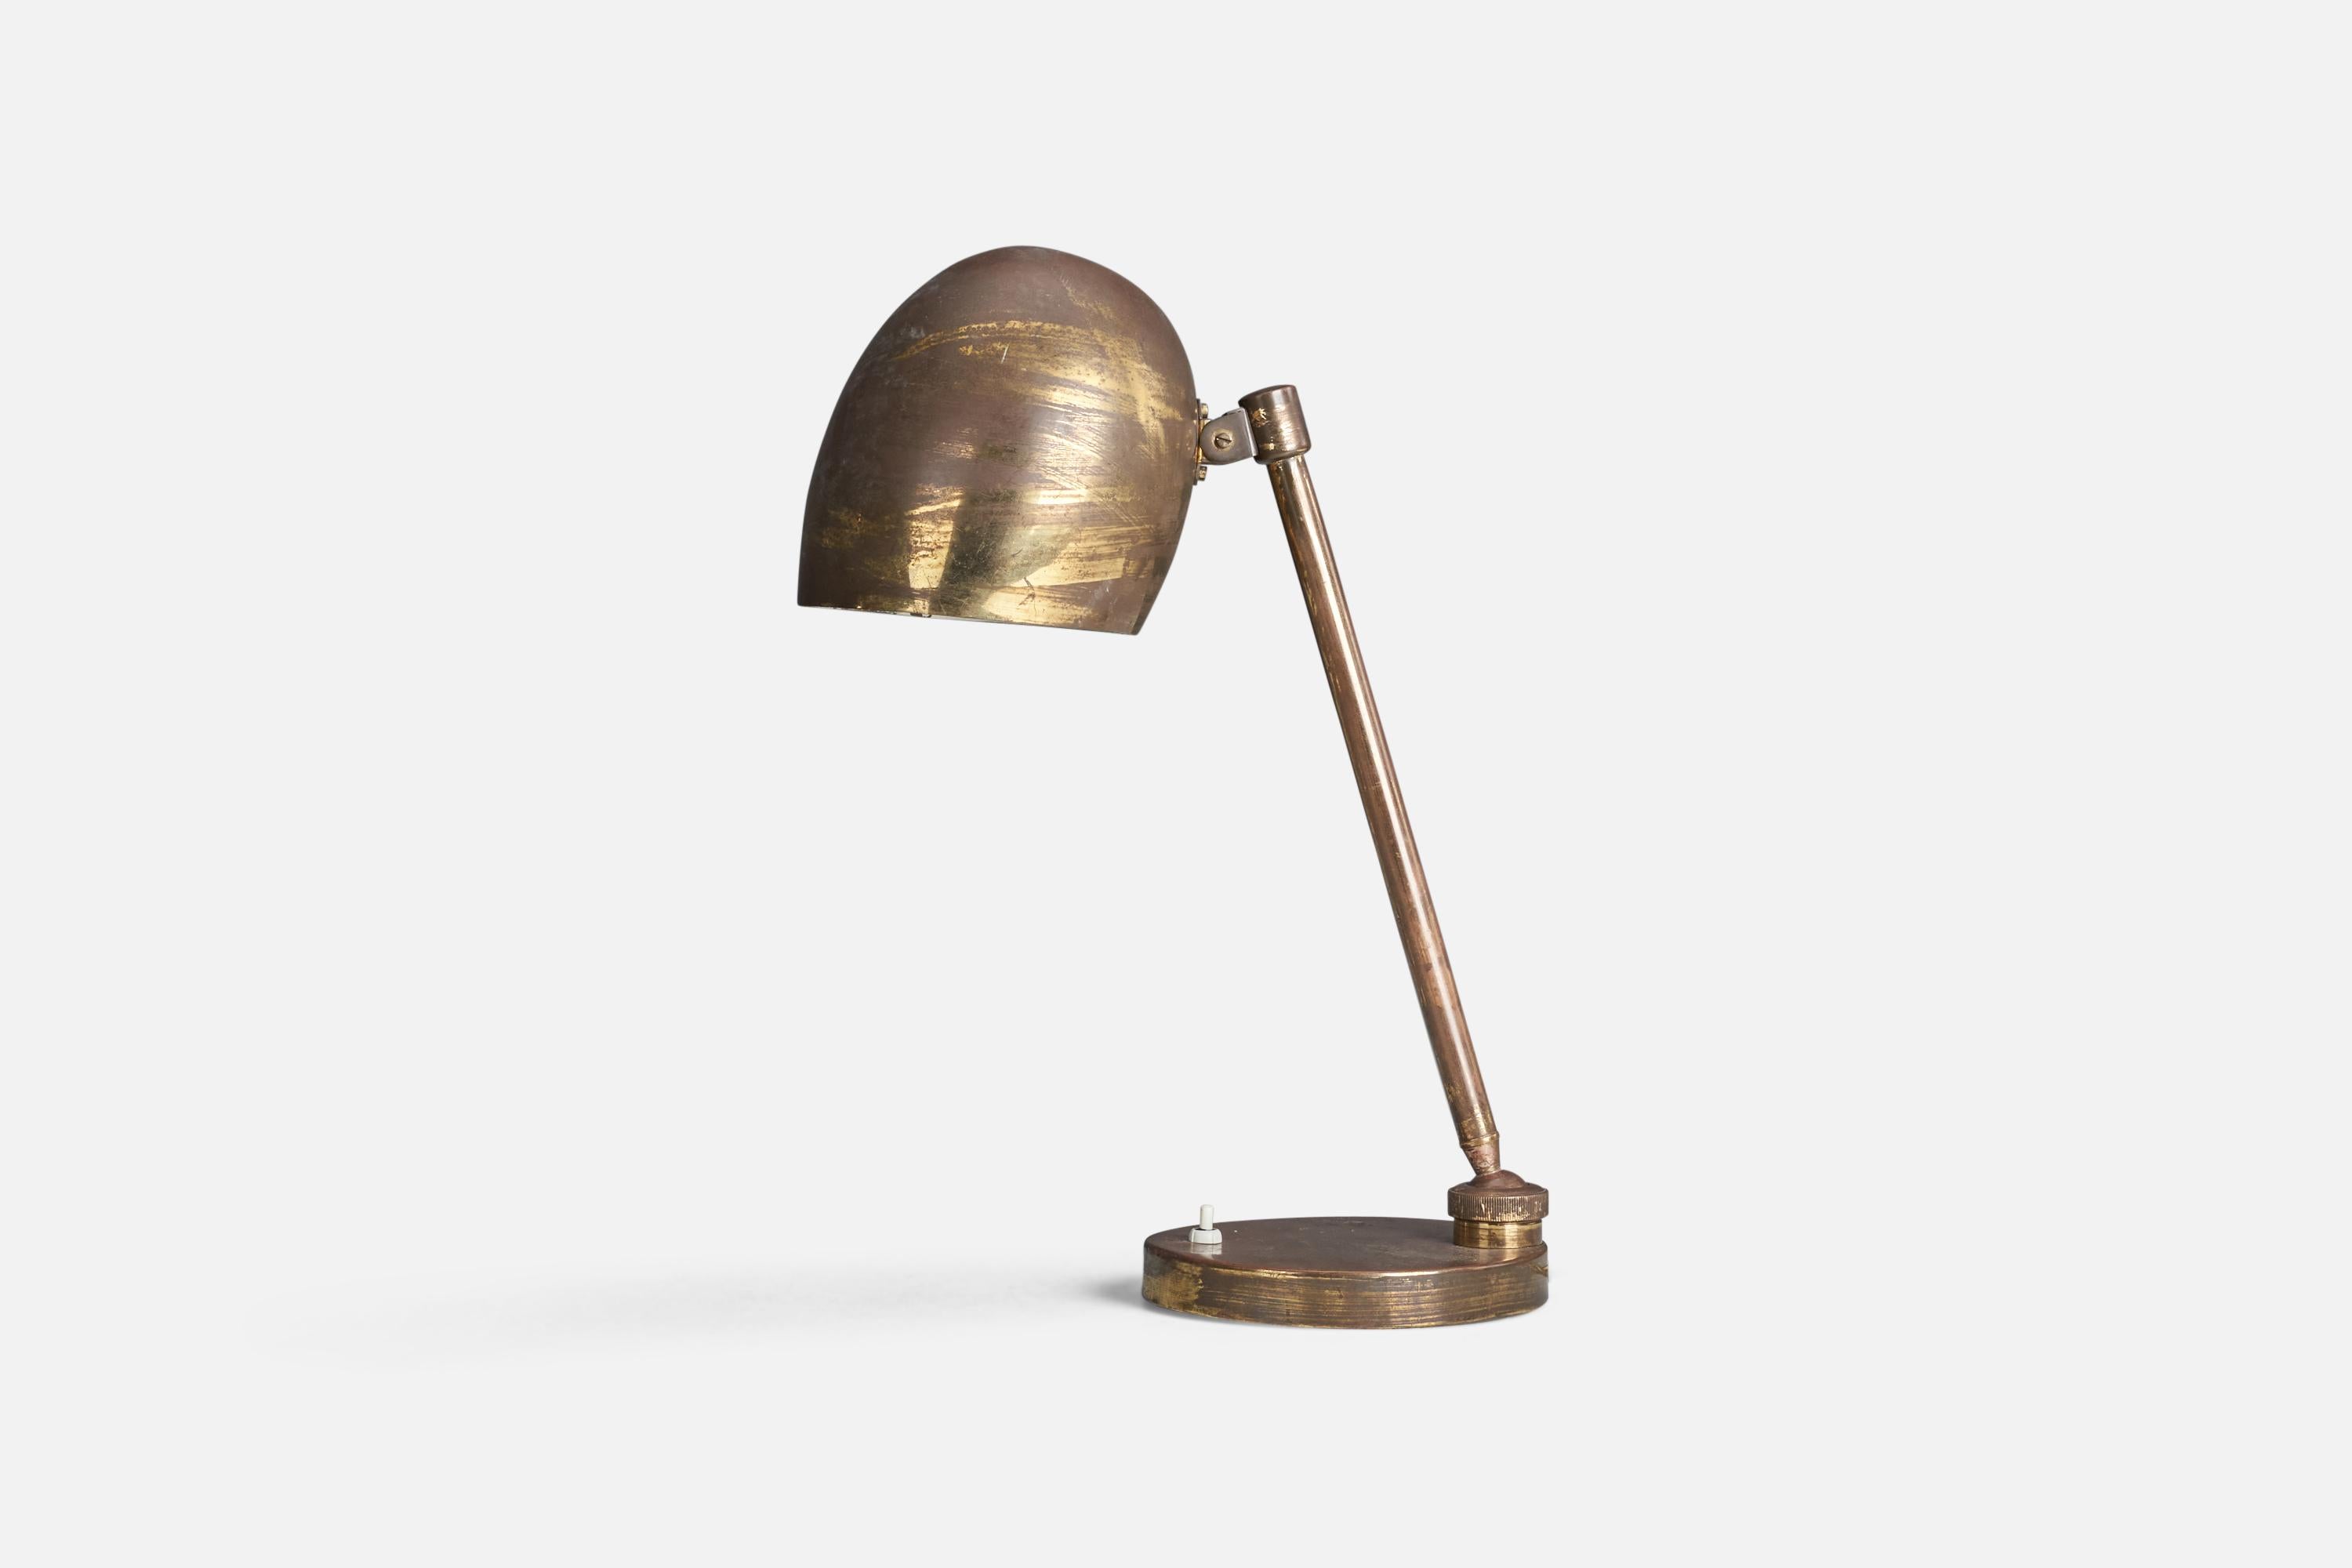 Lampe de table en laiton conçue et produite par un designer italien, Italie, années 1940.

La douille accepte les ampoules standard E-26 à culot moyen.

Il n'y a pas de puissance maximale indiquée sur le luminaire.